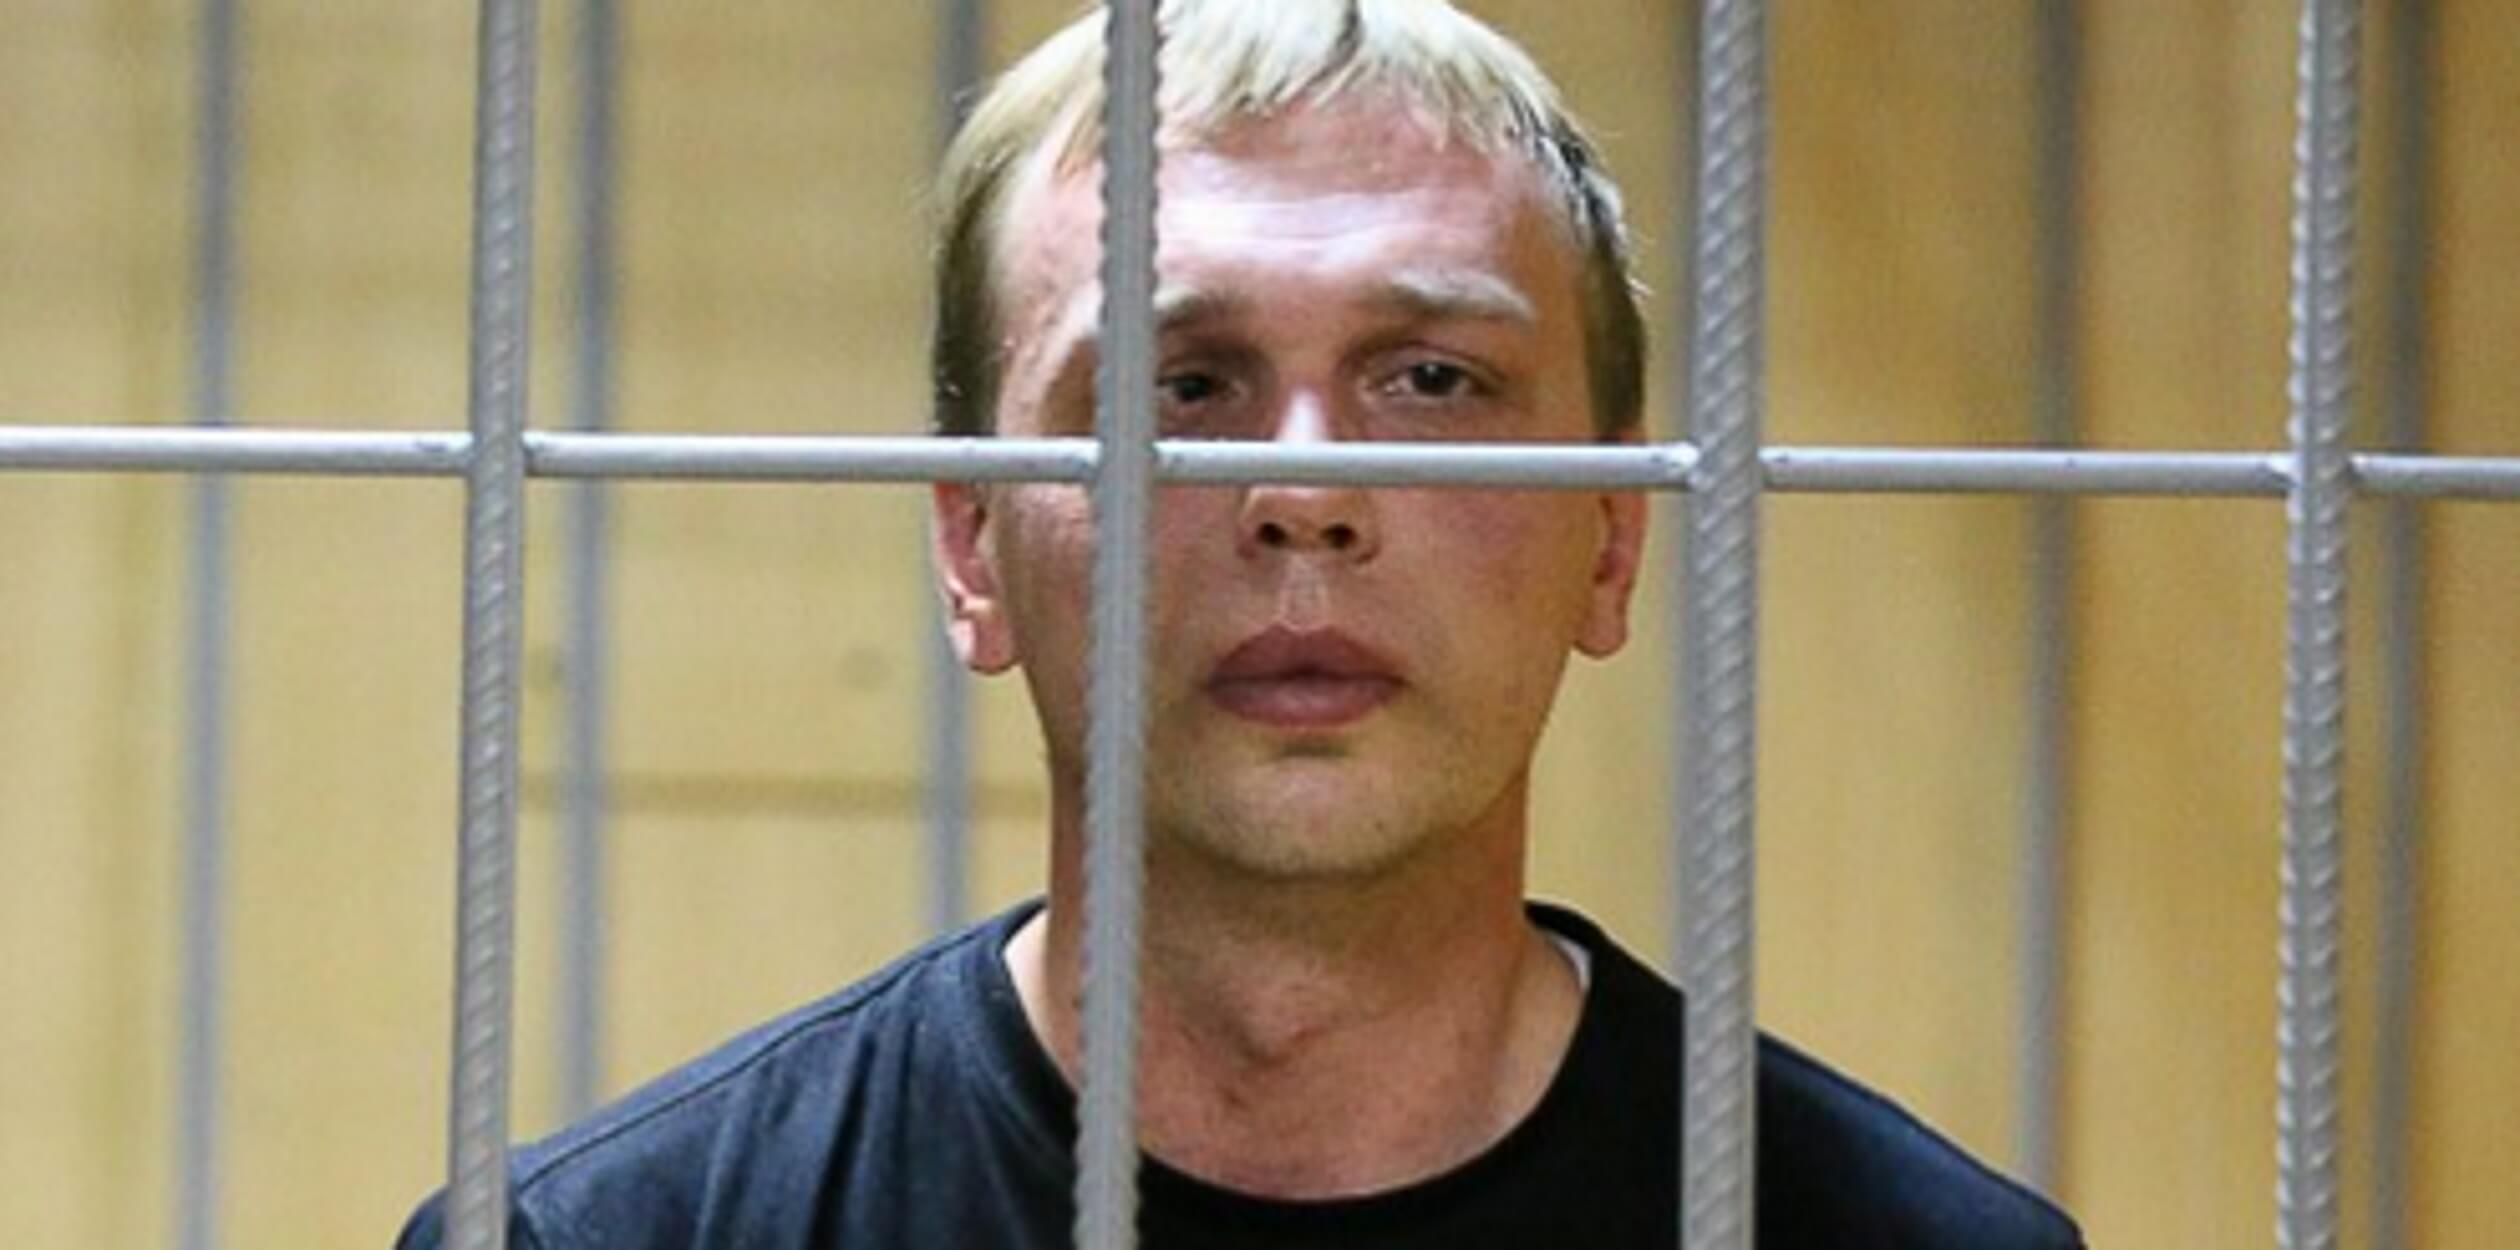 Ρωσία: Κατάφωρη παραβίαση δικαιωμάτων στην υπόθεση του δημοσιογράφου Ιβάν Γκολουνόφ!